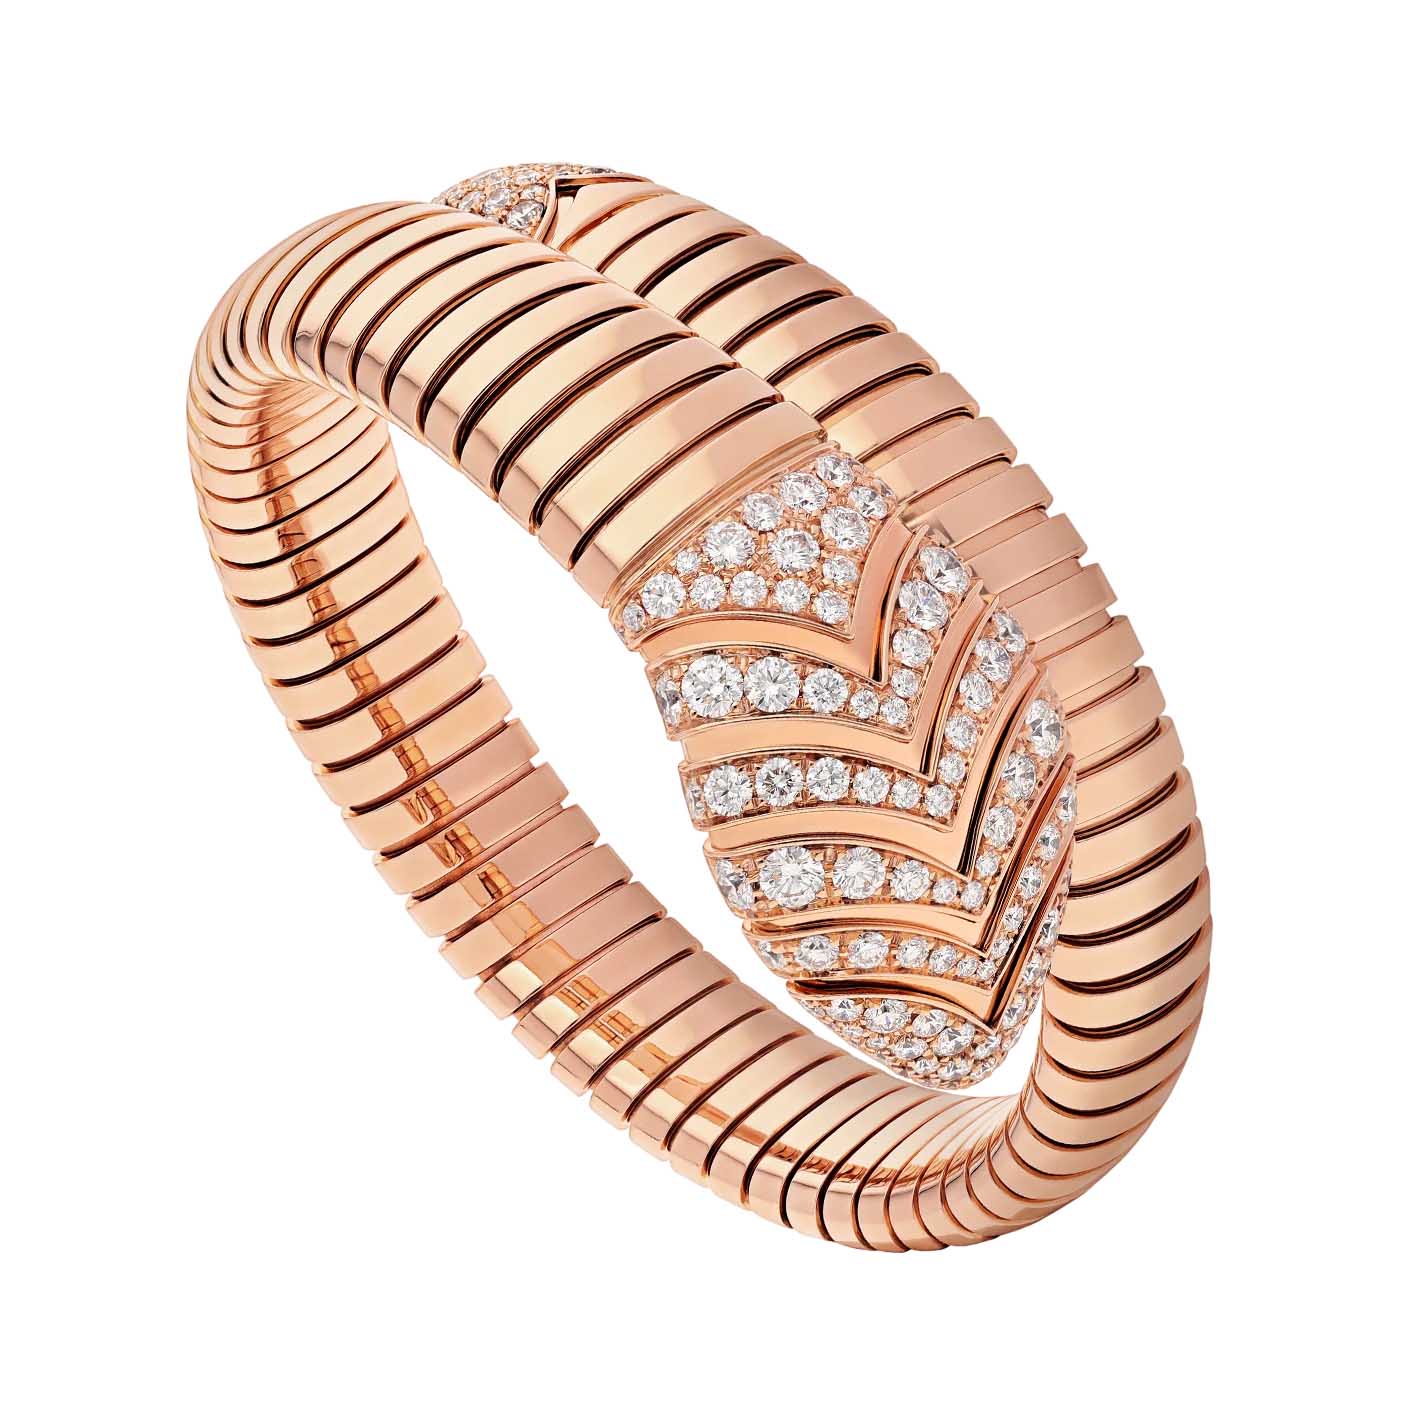 Joias OEM / ODM no atacado feitas de pulseira de espiral única banhada a ouro rosa 18 kt em prata esterlina